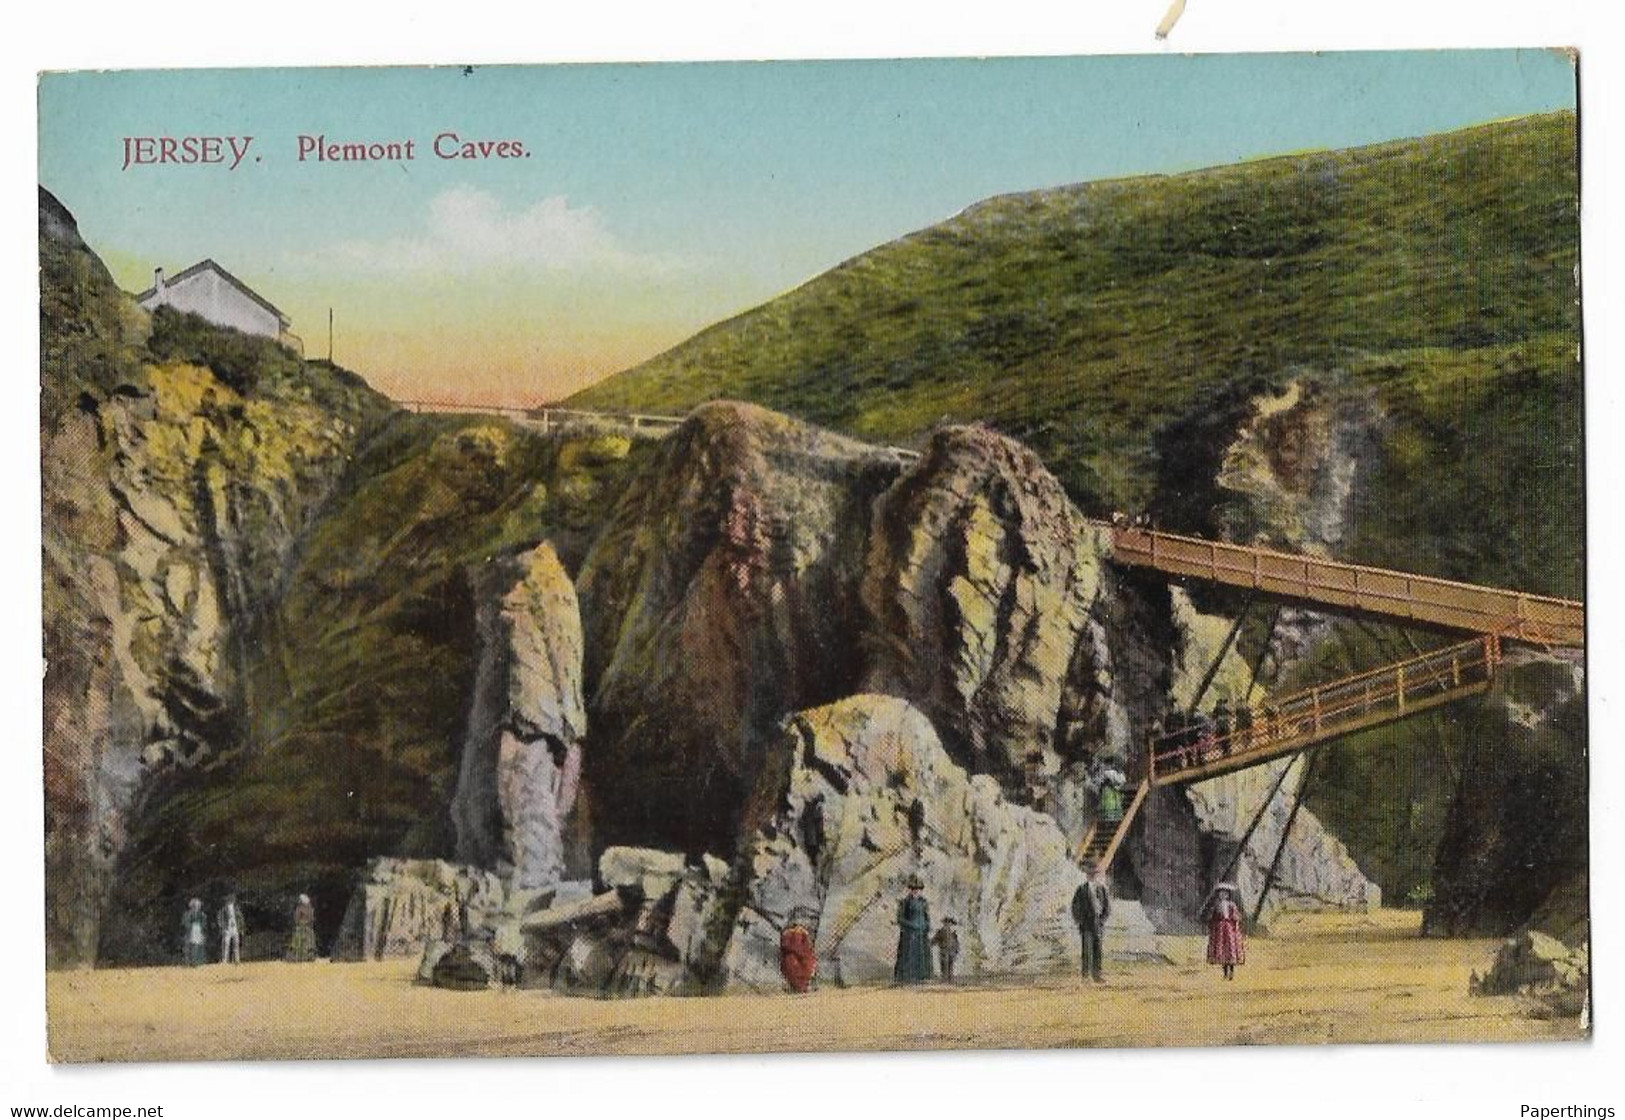 Postcard, Jersey, Plemont Caves, People, House, Landscape. - Plemont